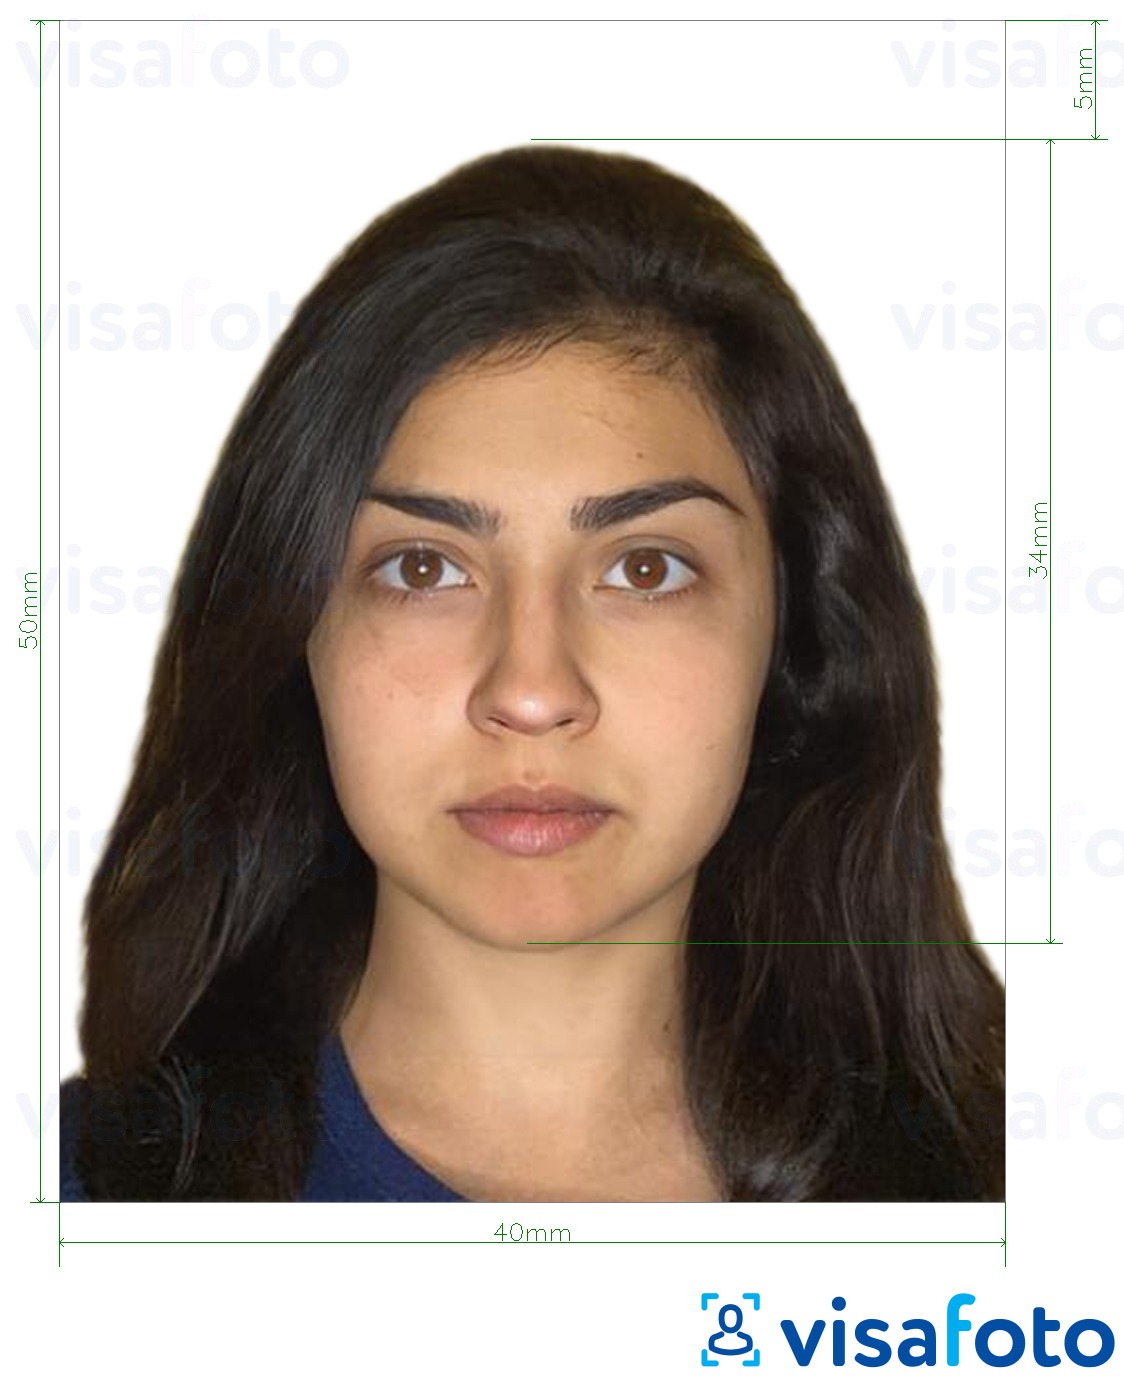 ფოტოს მაგალითი ნიკარაგუას პასპორტი 4x5 სმ -სთვის ზუსტი ზომის სპეციფიკაციით